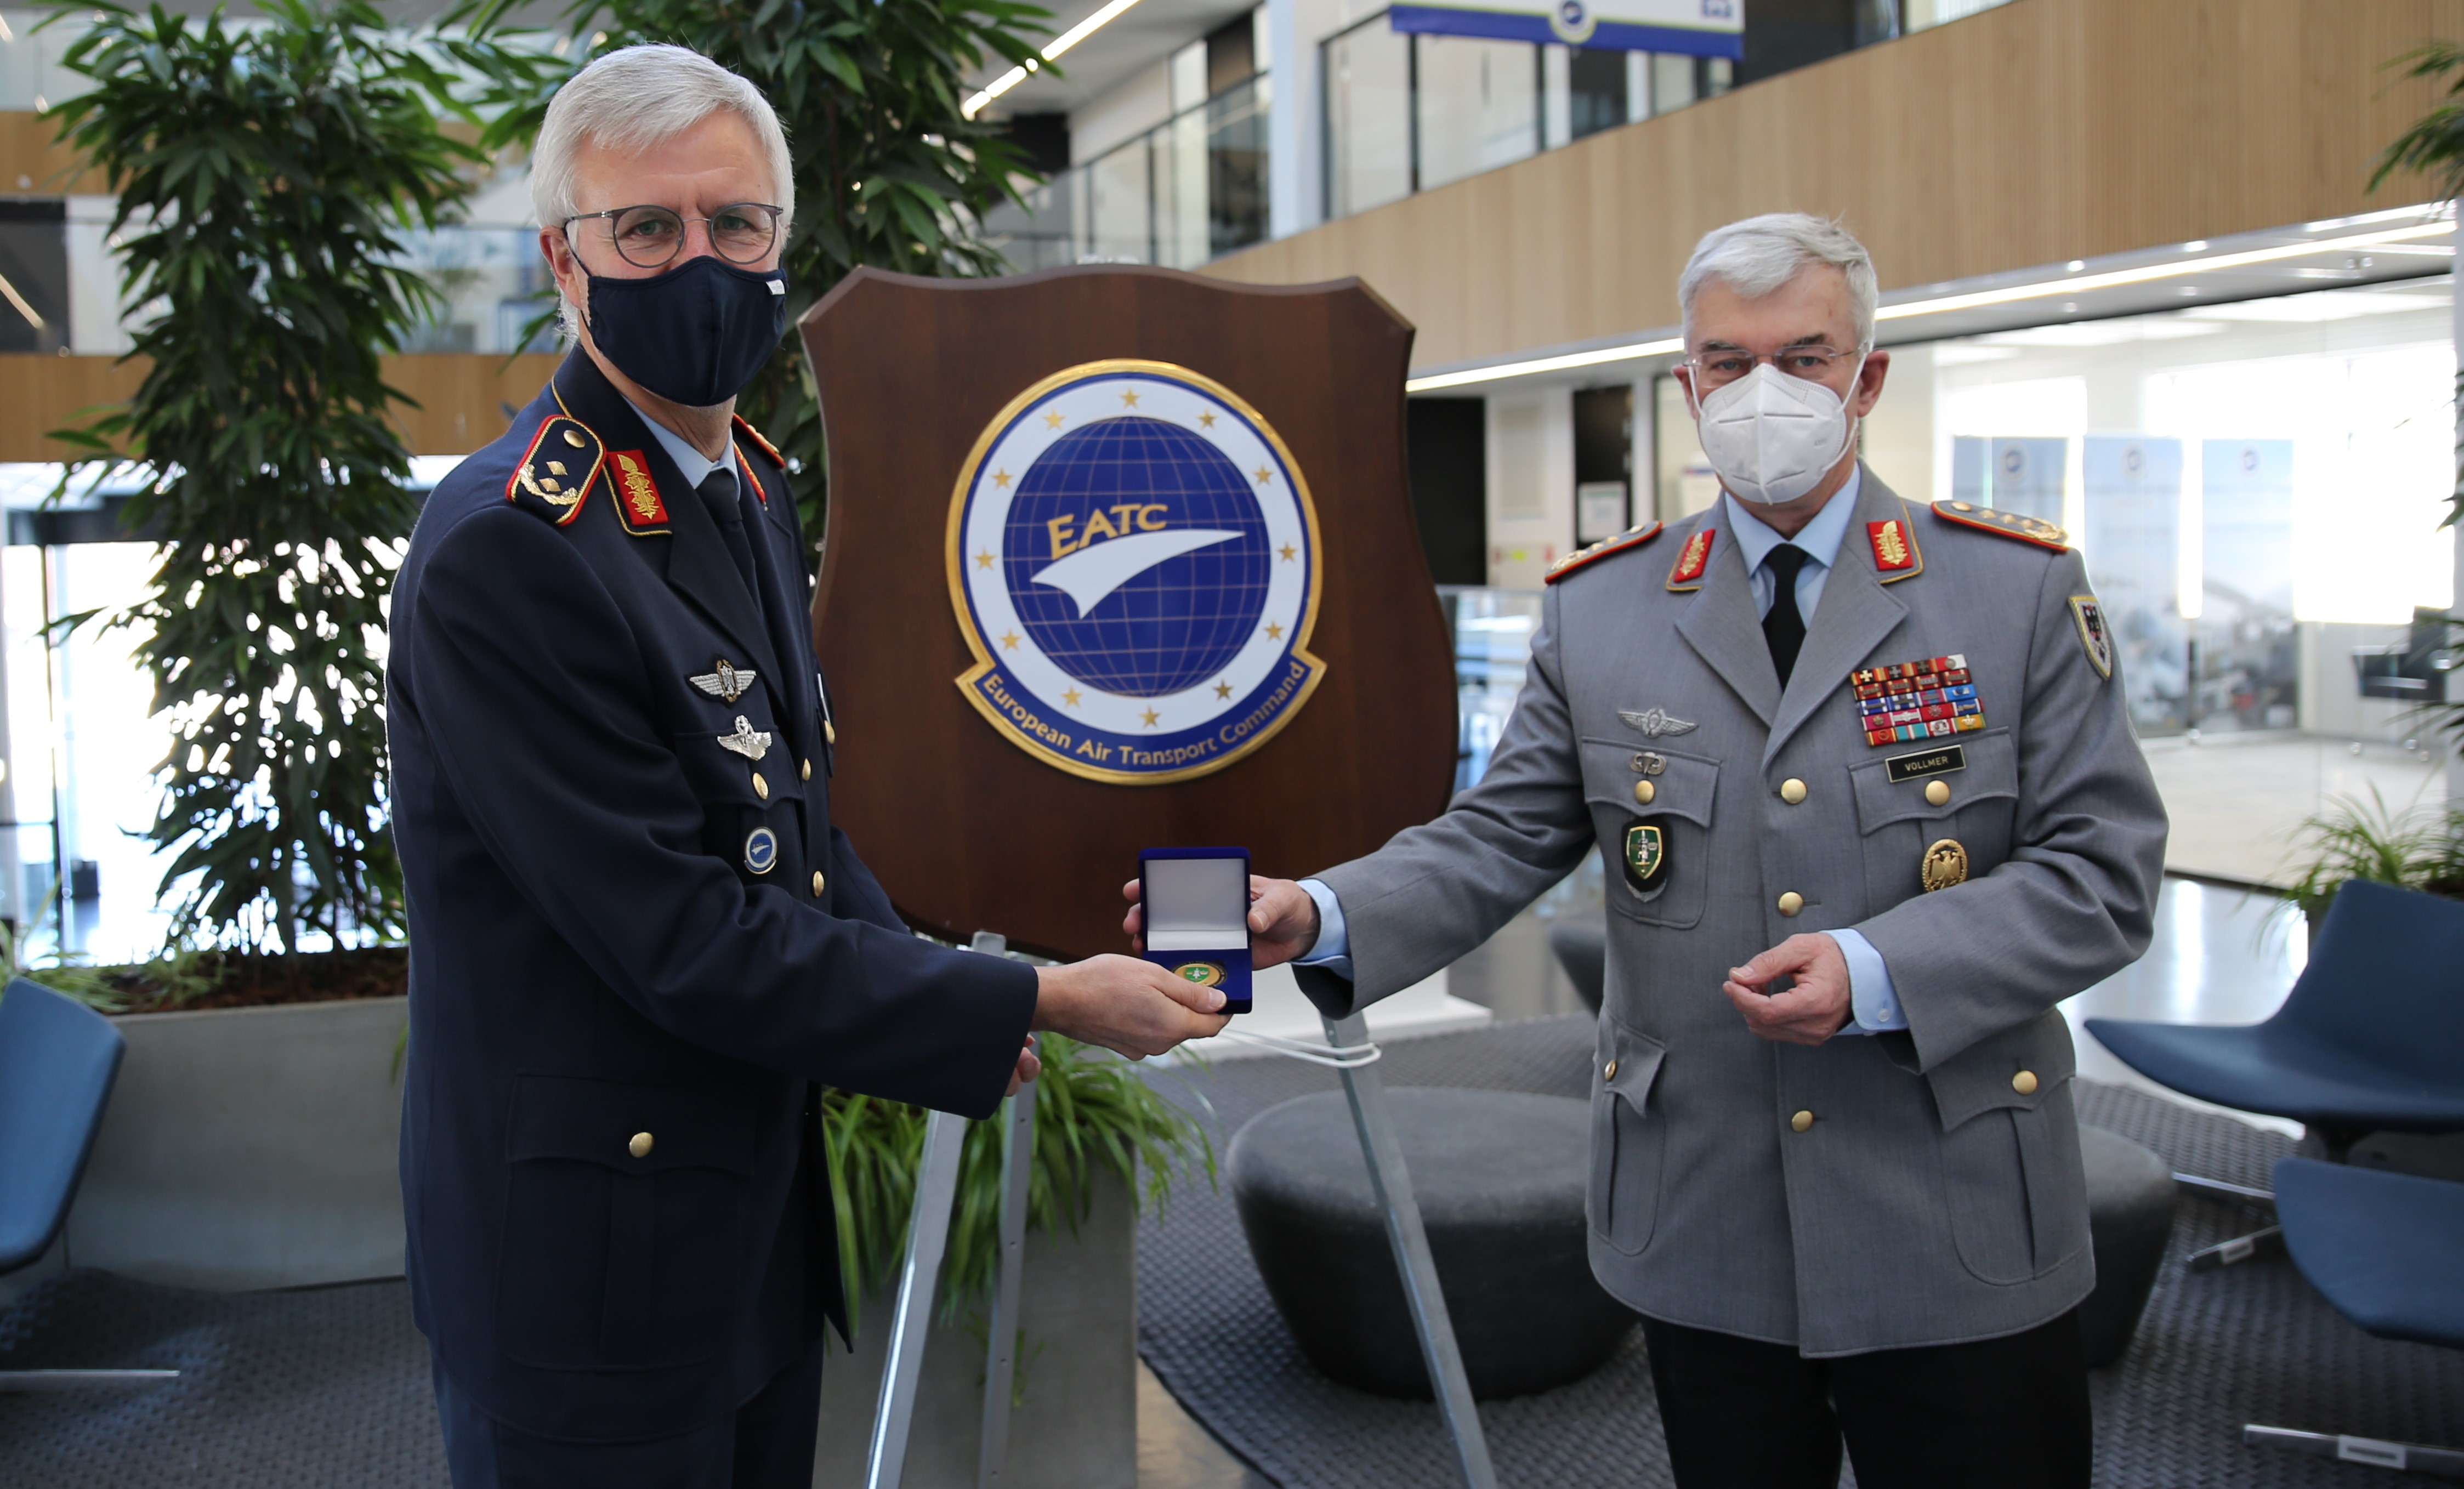 The Commander Joint Force Command Brunssum visits EATC